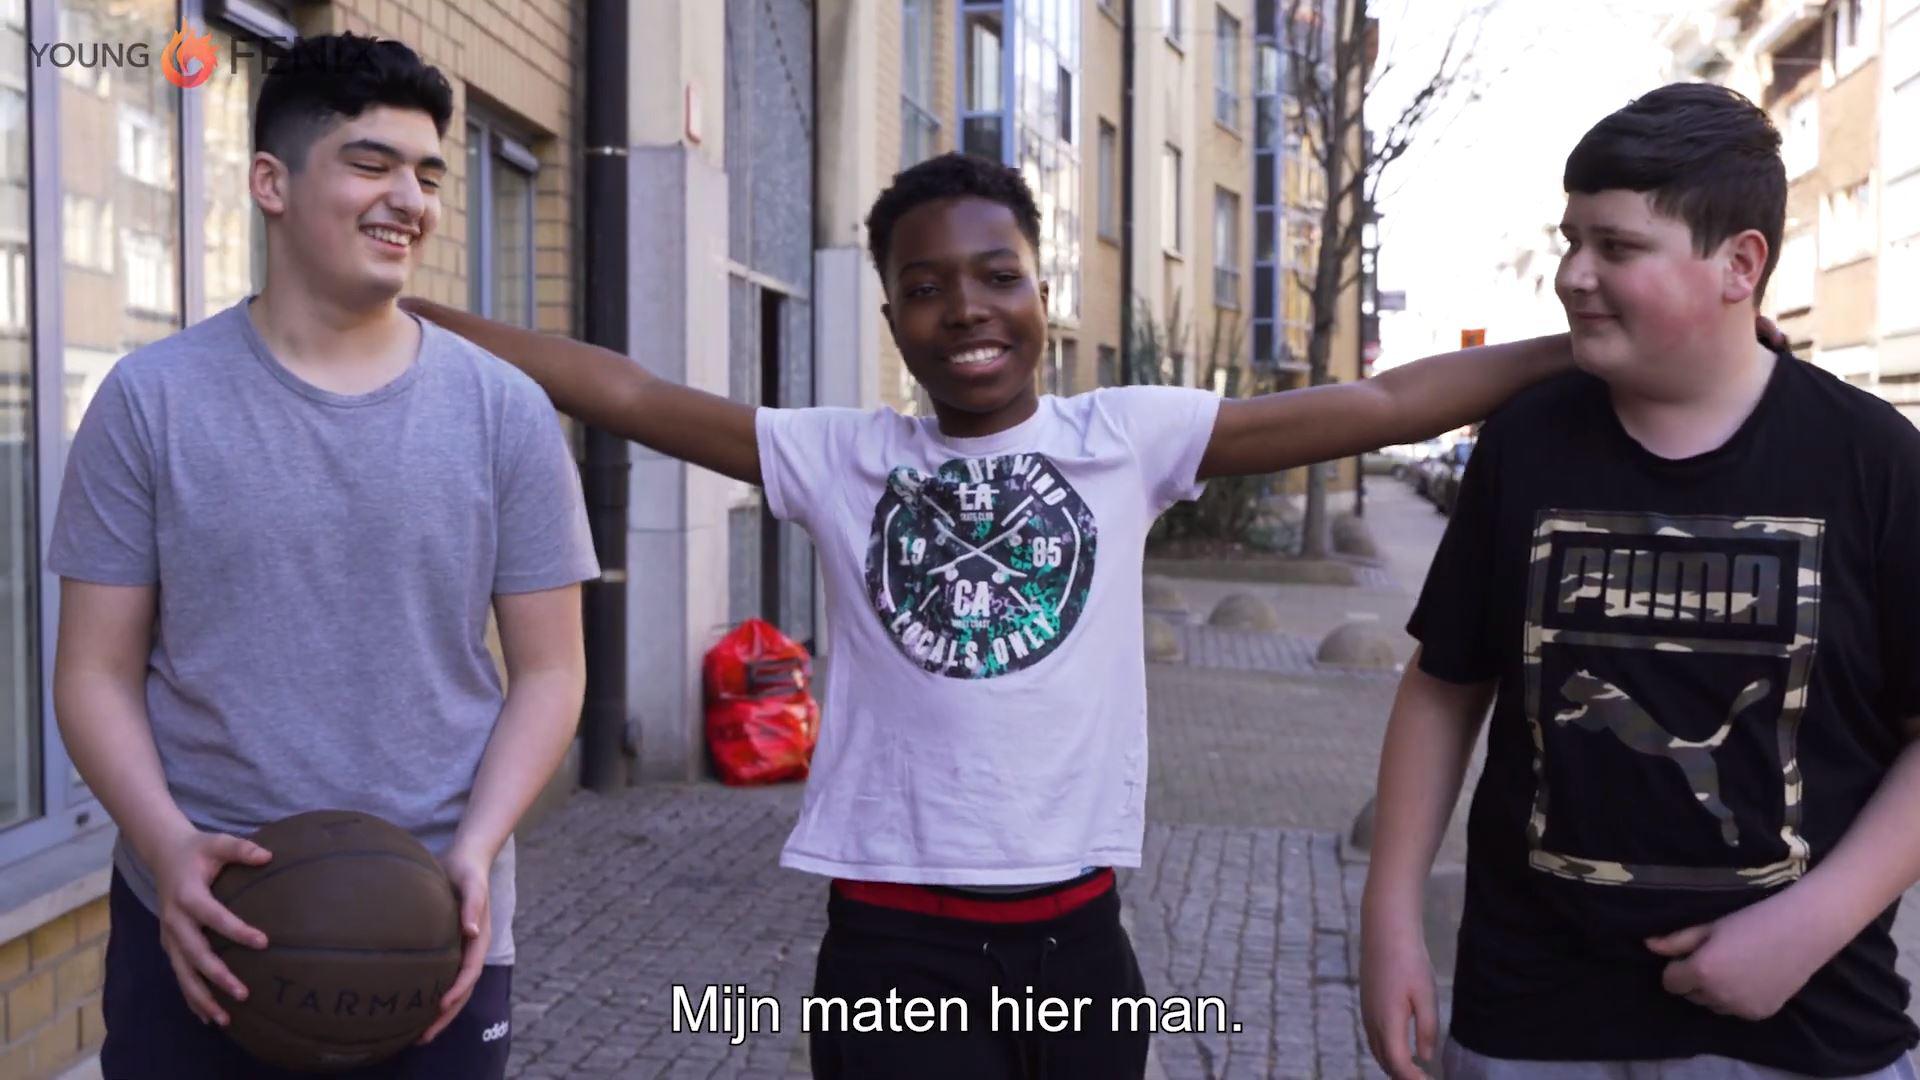 Young Fenix viert eerste verjaardag met terugblik “Getuigenissen tonen de veerkracht van tieners” (Antwerpen) Gazet van Antwerpen Mobile